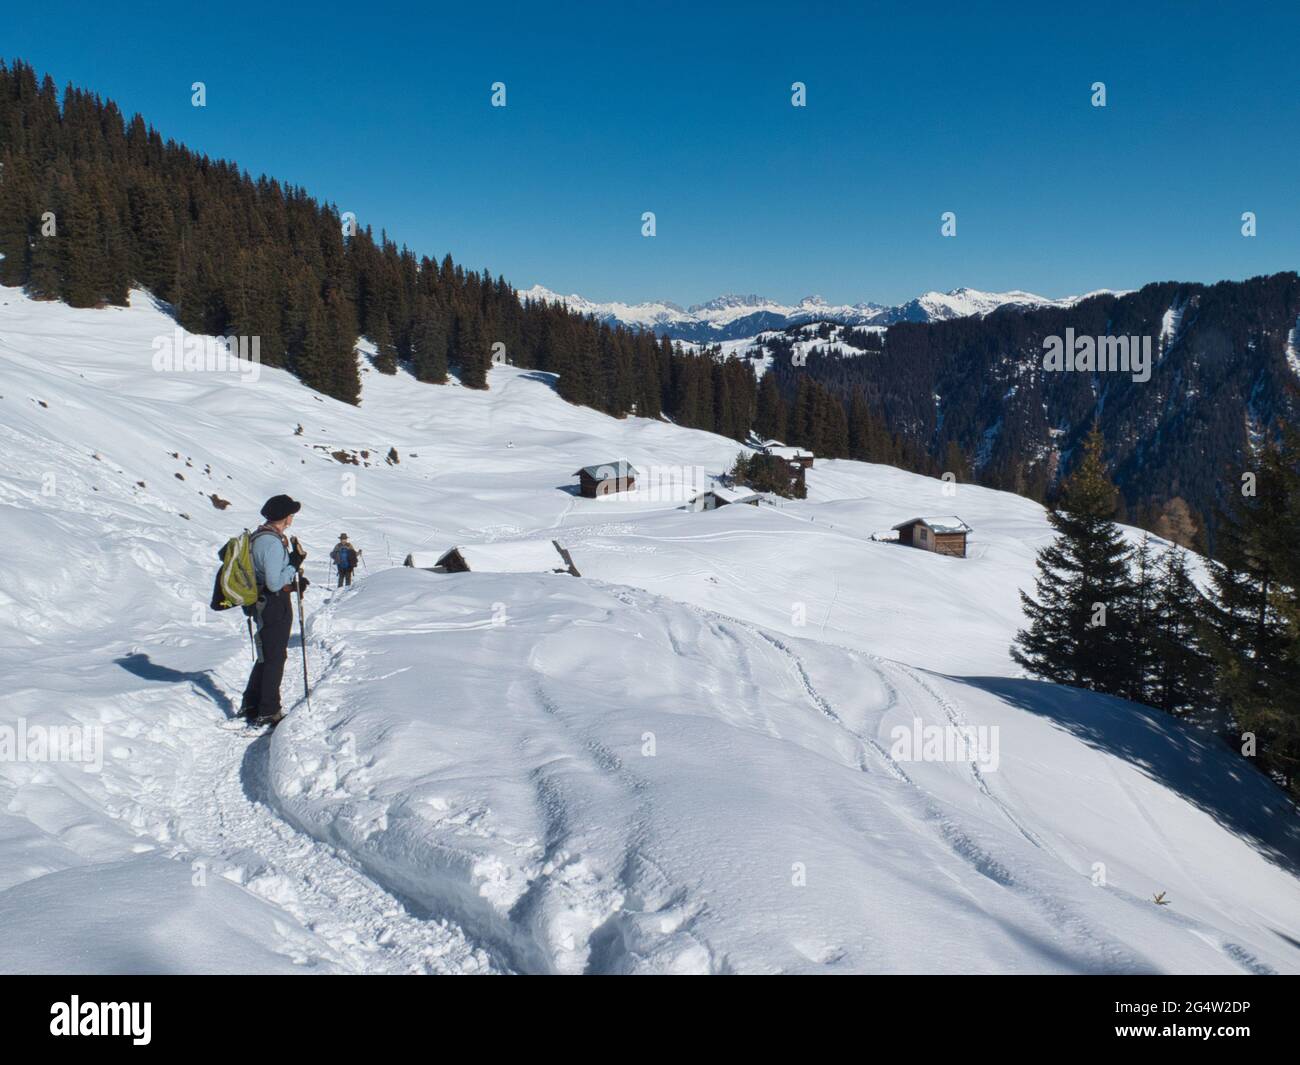 Eine Schneeschuhwandererin hält inne, um sich die Aussicht auf das Safiental im Kanton Graubünden in den Schweizer Alpen, Schweiz, anzusehen Stockfoto